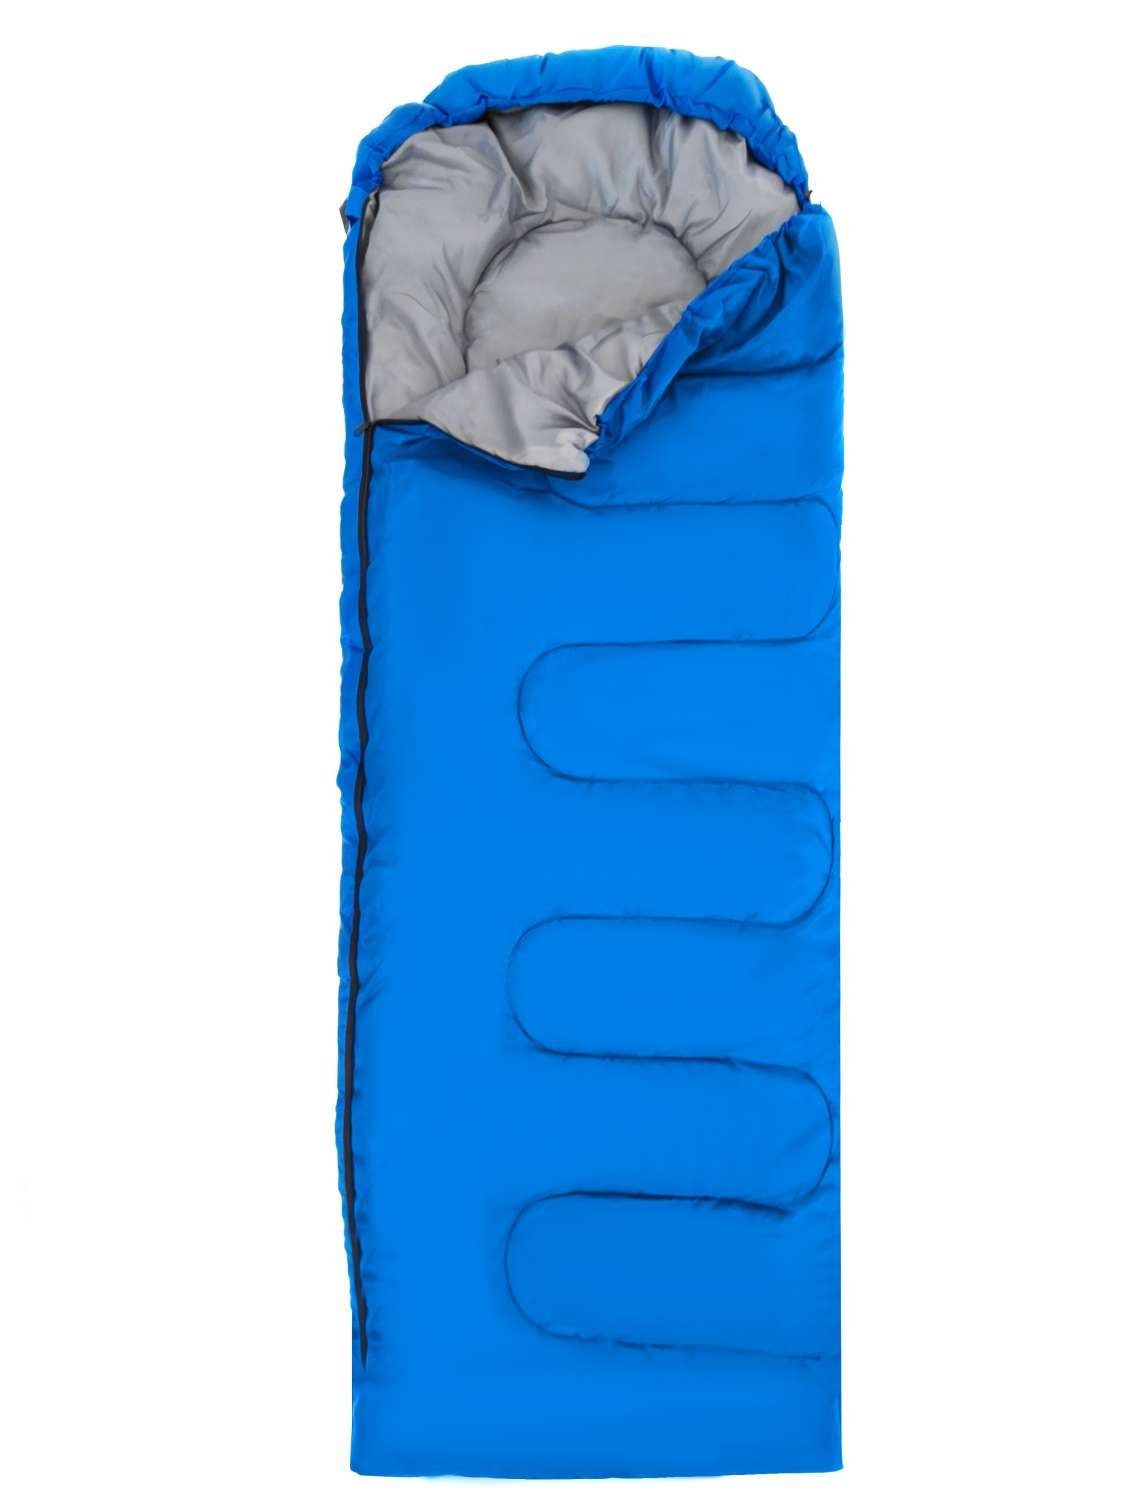 Intirilife Schlafsack, Schlafsack 0 - 5 Grad aus blauem Polyester - 210 x 70 cm